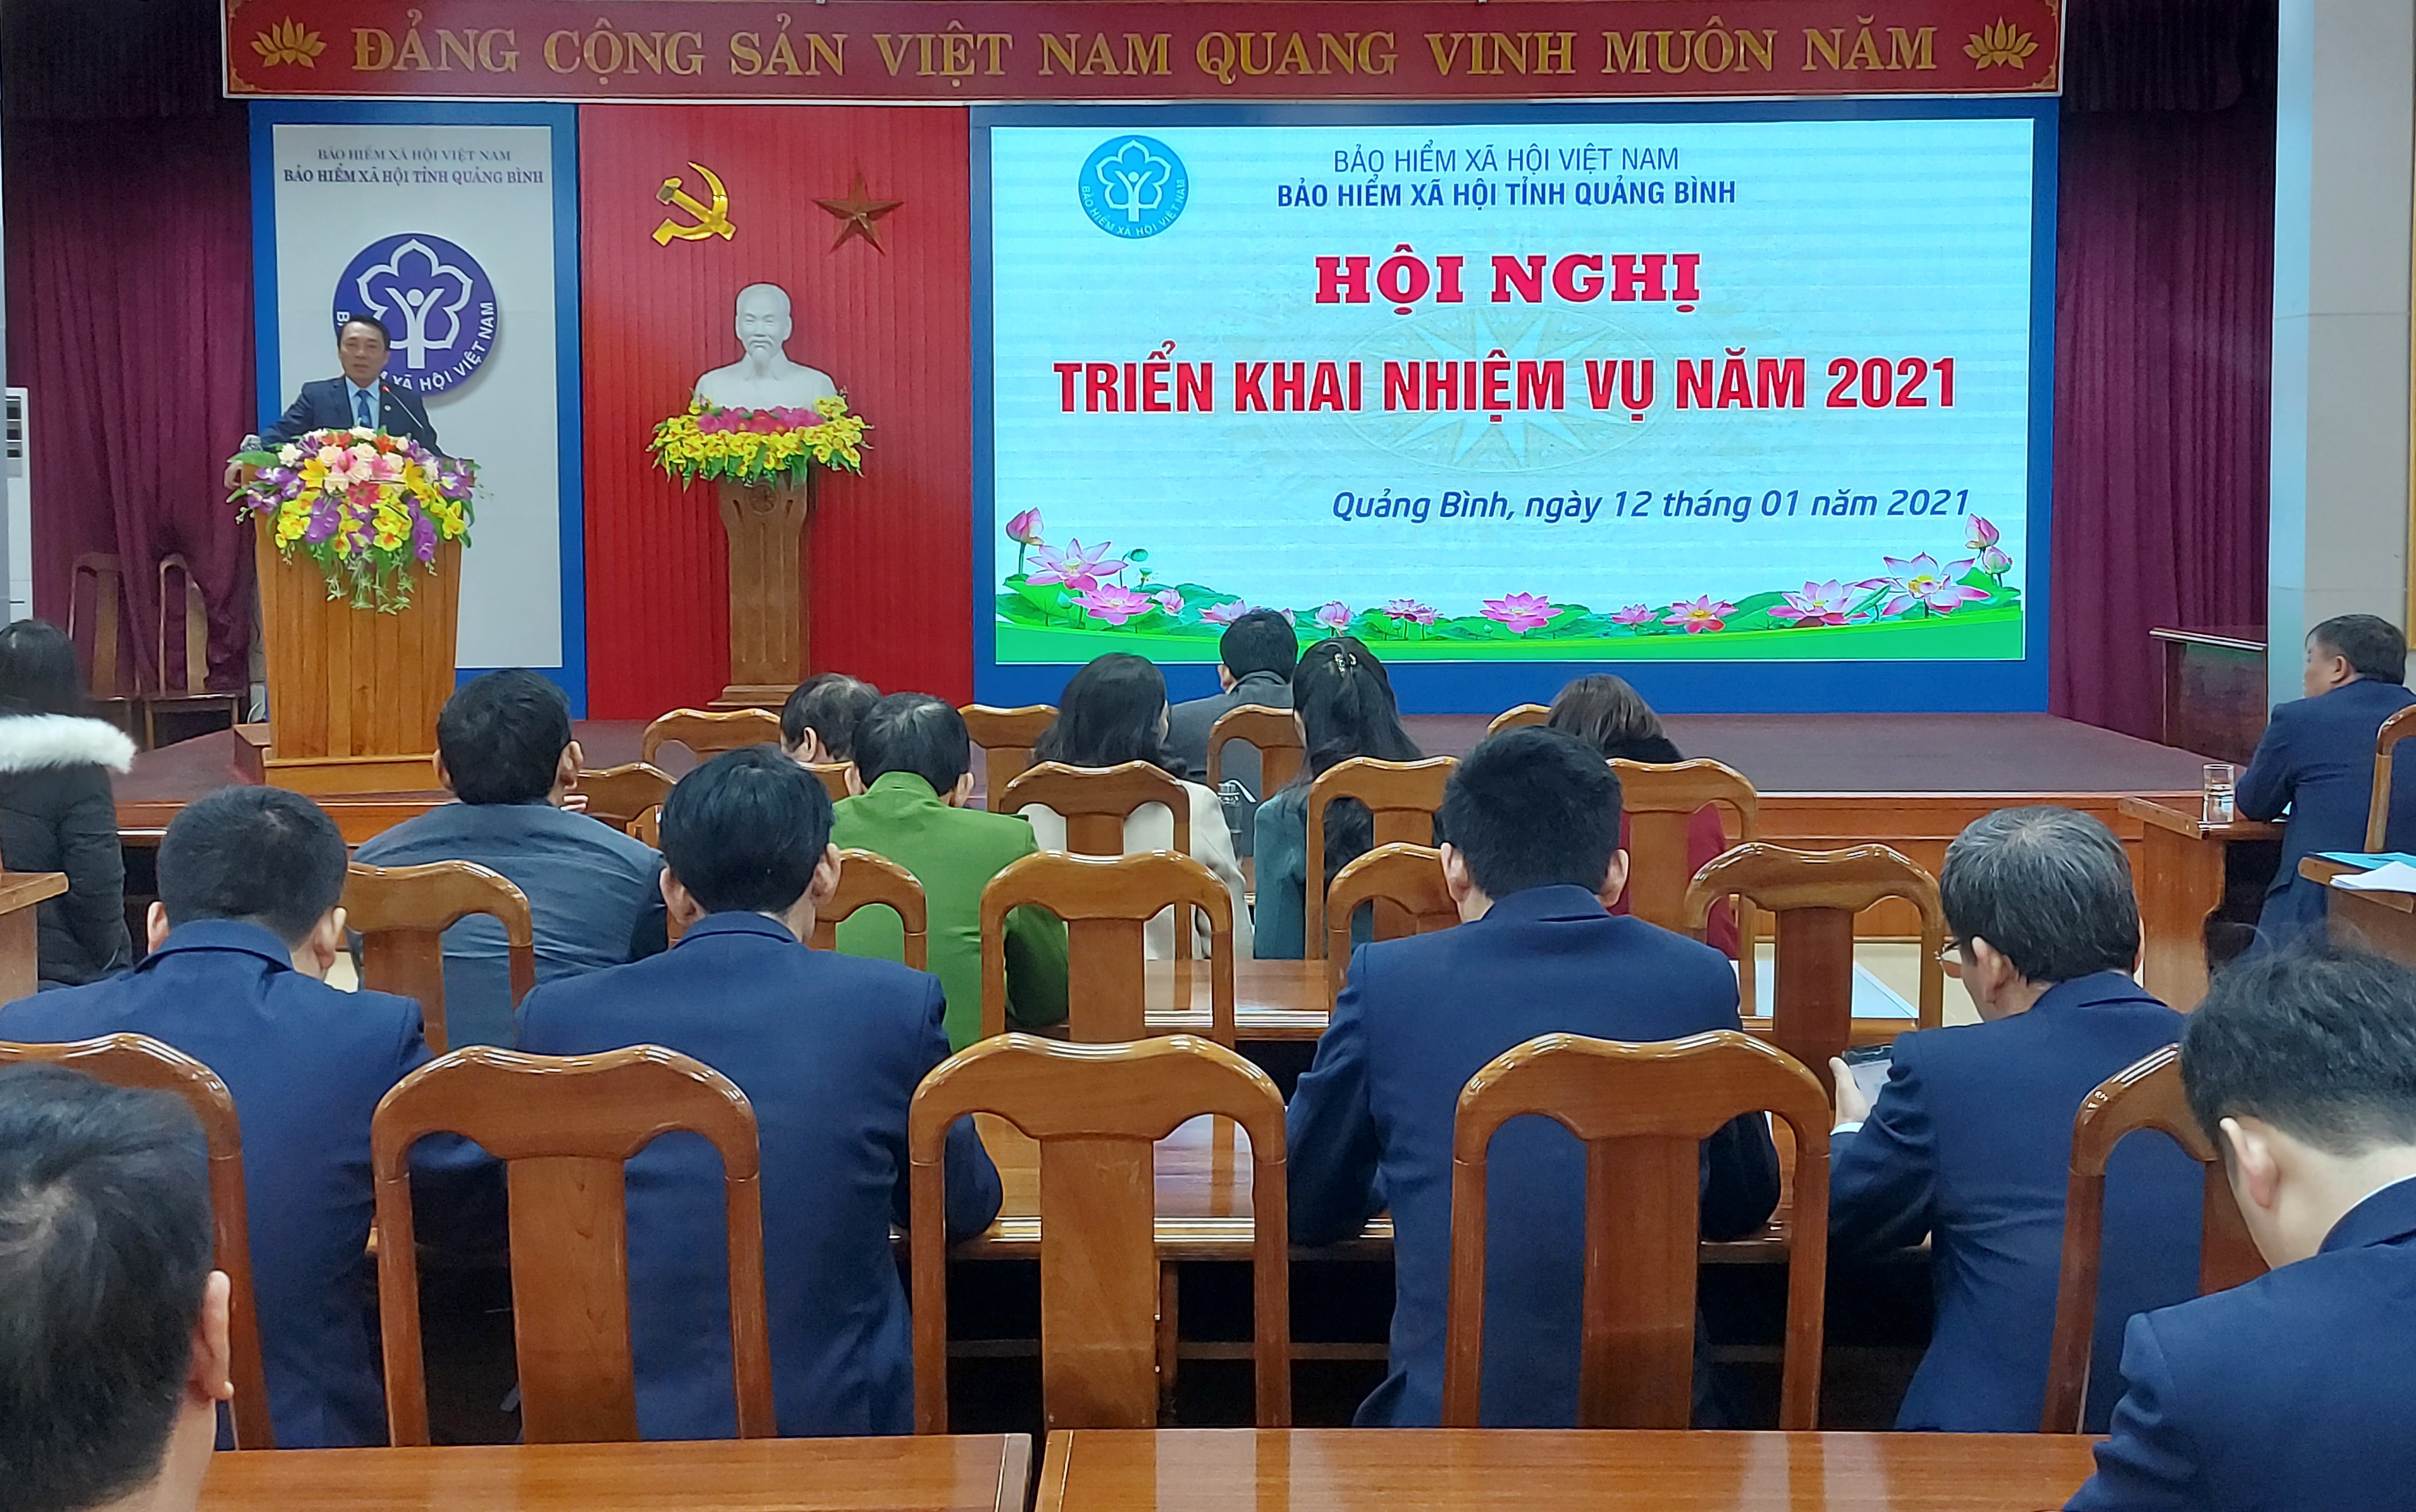 Các đại biểu tham dự hội nghị triển khai nhiệm vụ năm 2021 của BHXH tỉnh Quảng Bình.